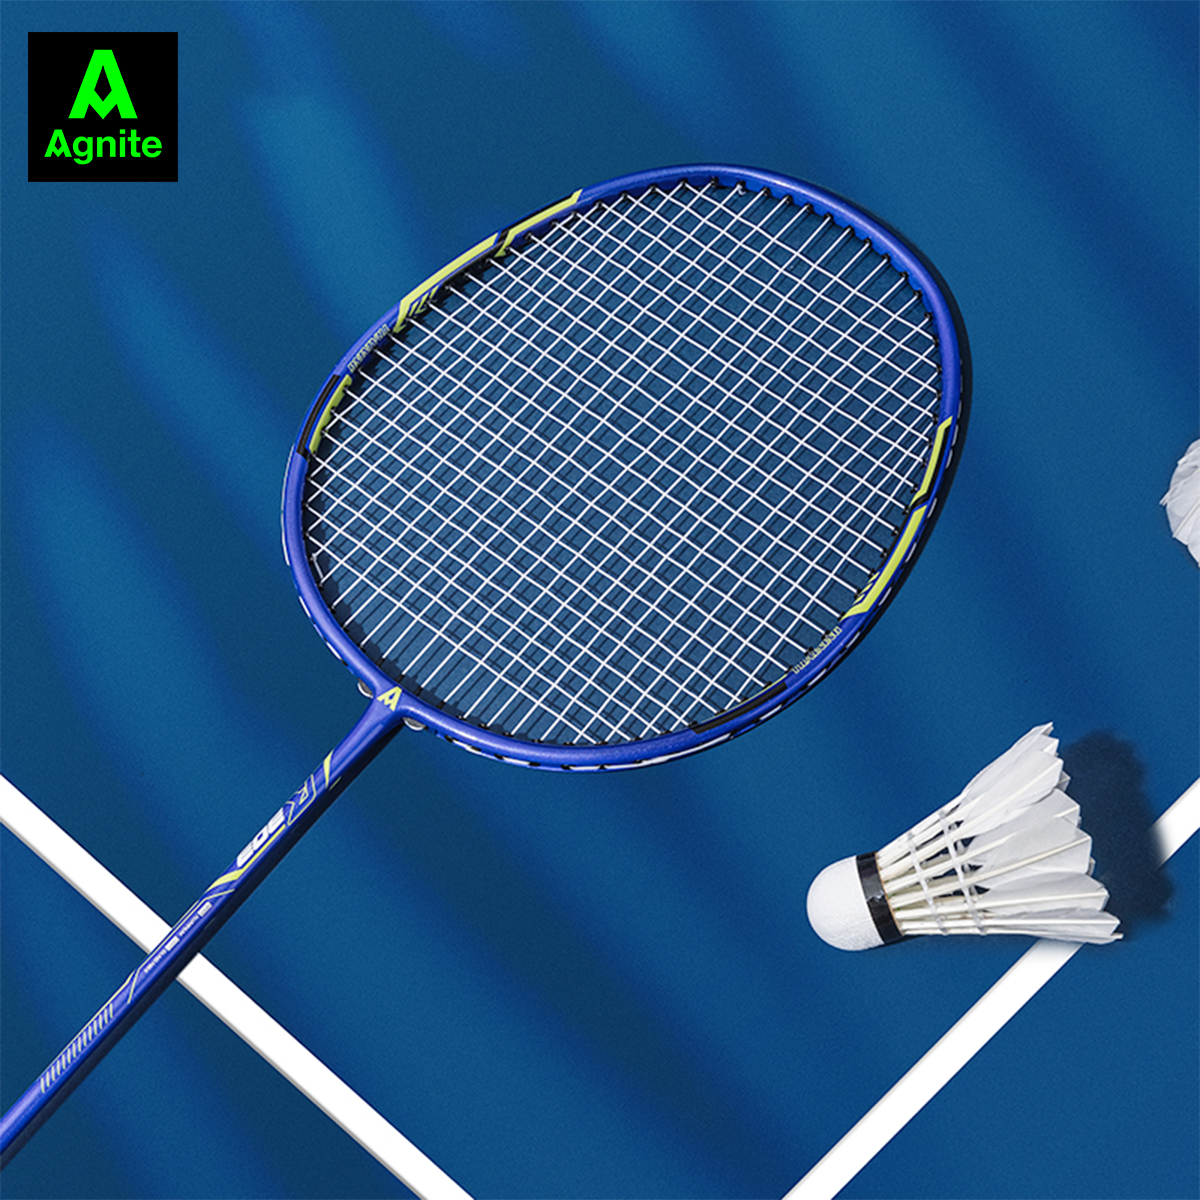 1 chiếc vợt cầu lông cao cấp Agnite chính hãng - khung carbon siêu bền, nhẹ, đẹp - tặng kèm túi đựng, căng sẵn dây - ER303